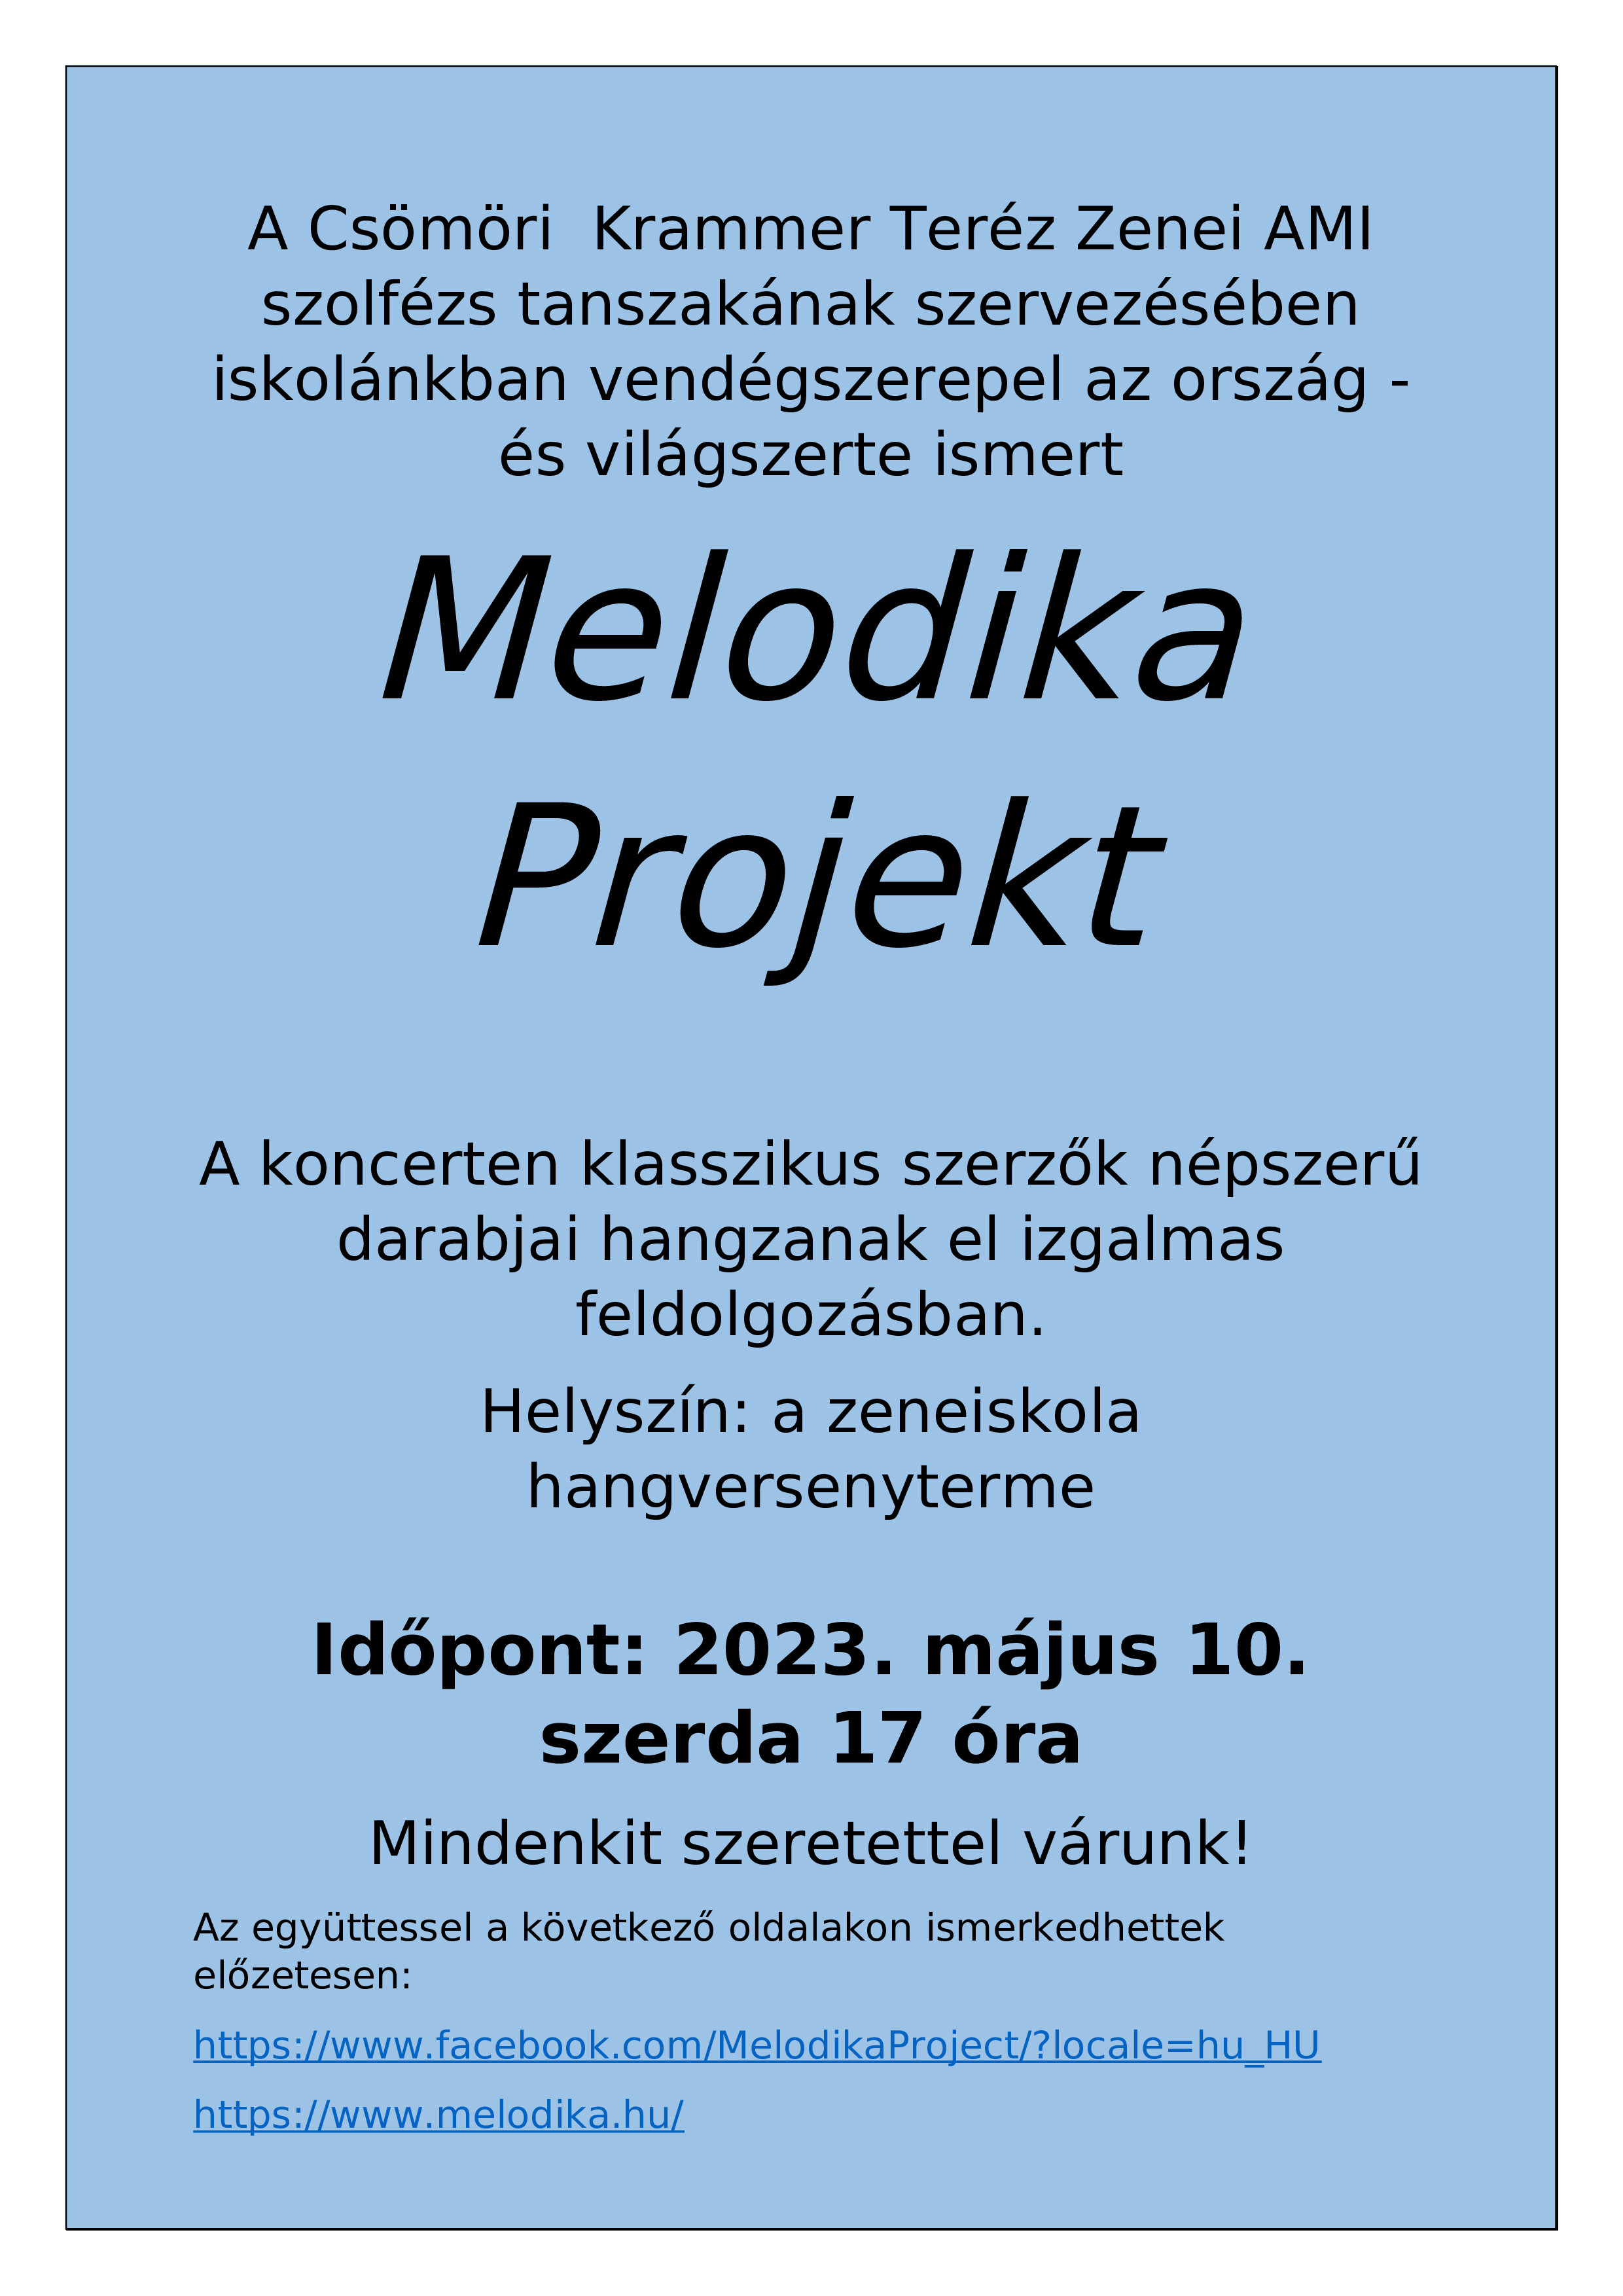 Melodika Projekt 2023.05.10.